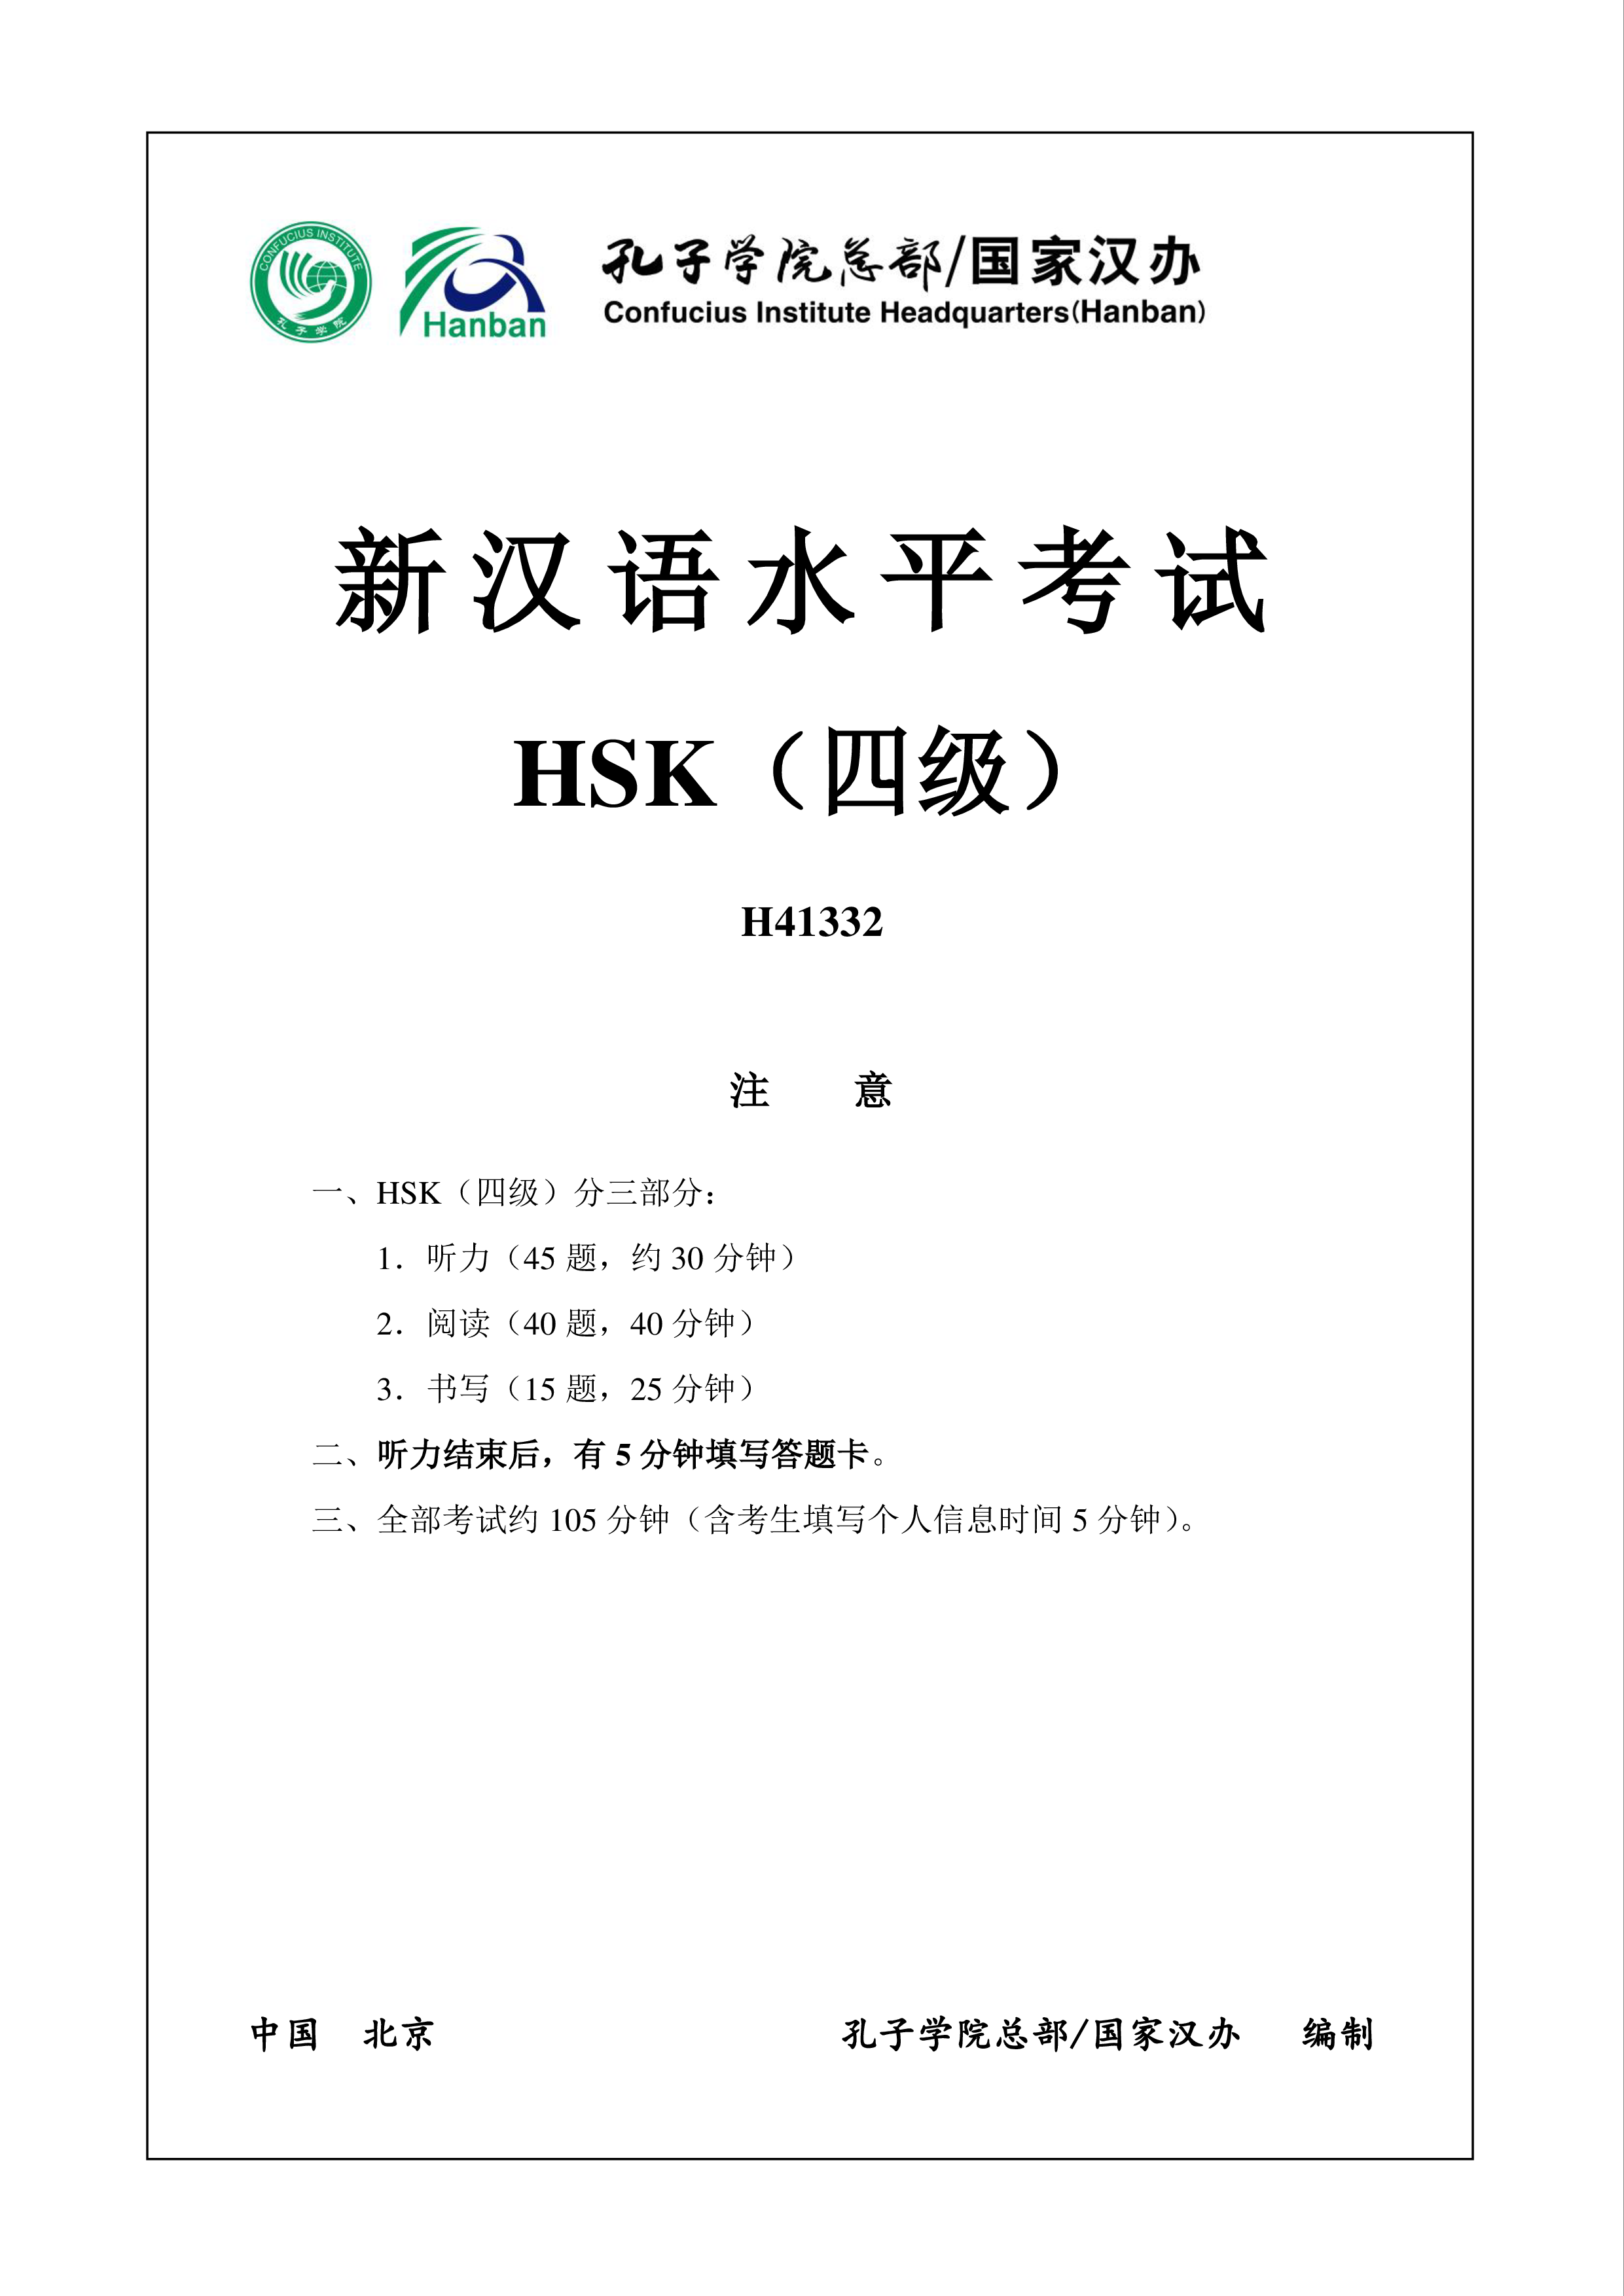 hsk4 chinees examen h41332 template